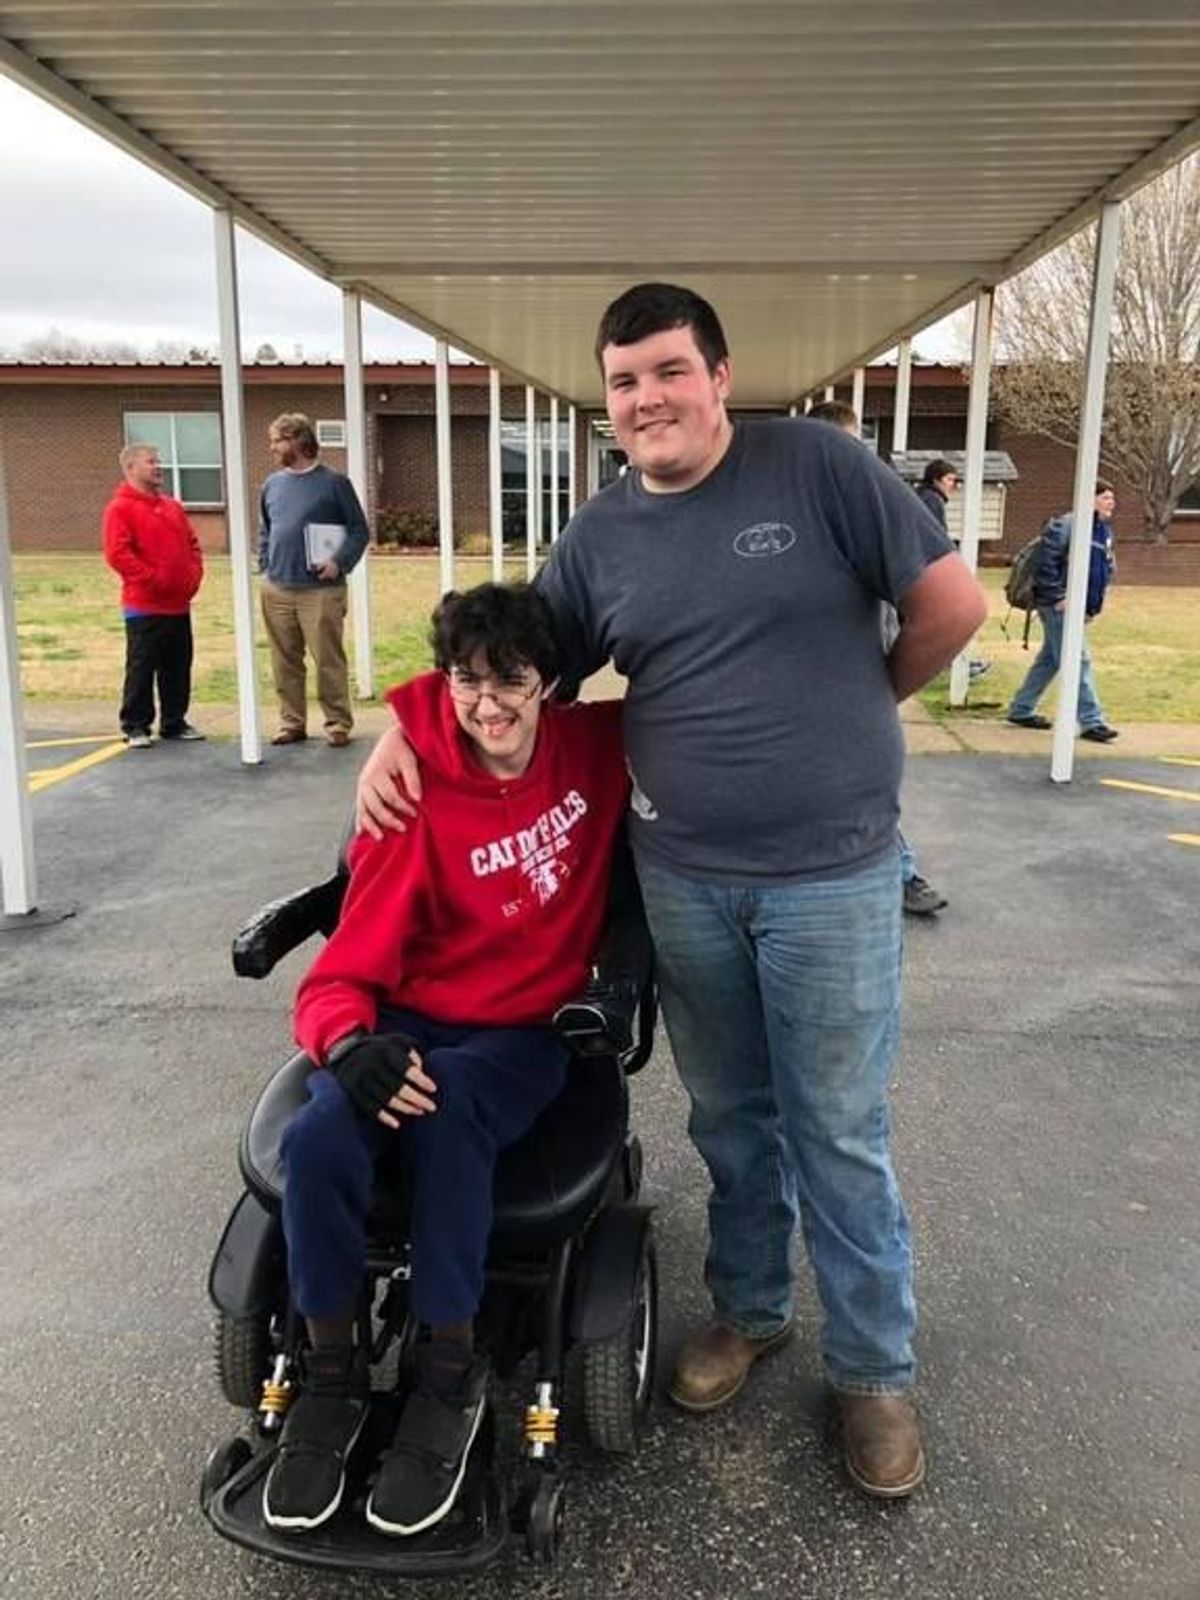 Rührend: Schüler kauft Klassenkamerad elektrischen Rollstuhl